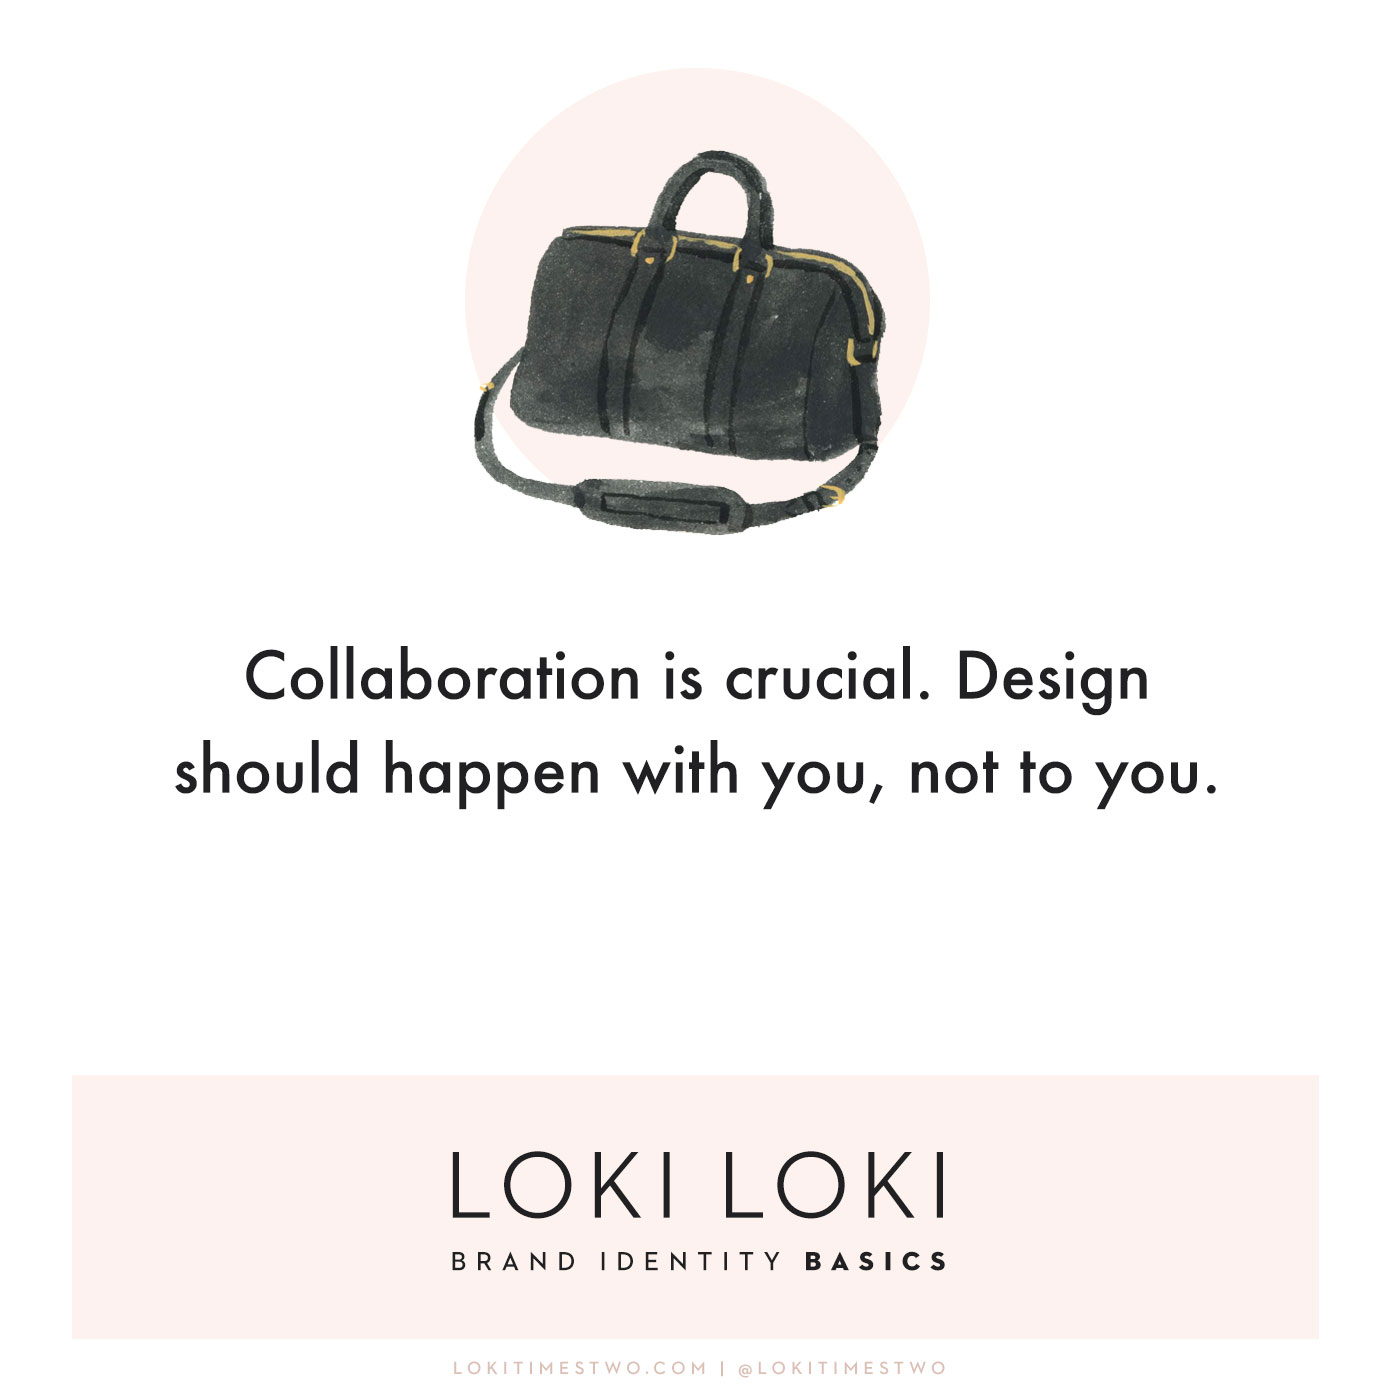 Loki Loki Brand Identity Basics, Collaboration, Sofia Coppola LV